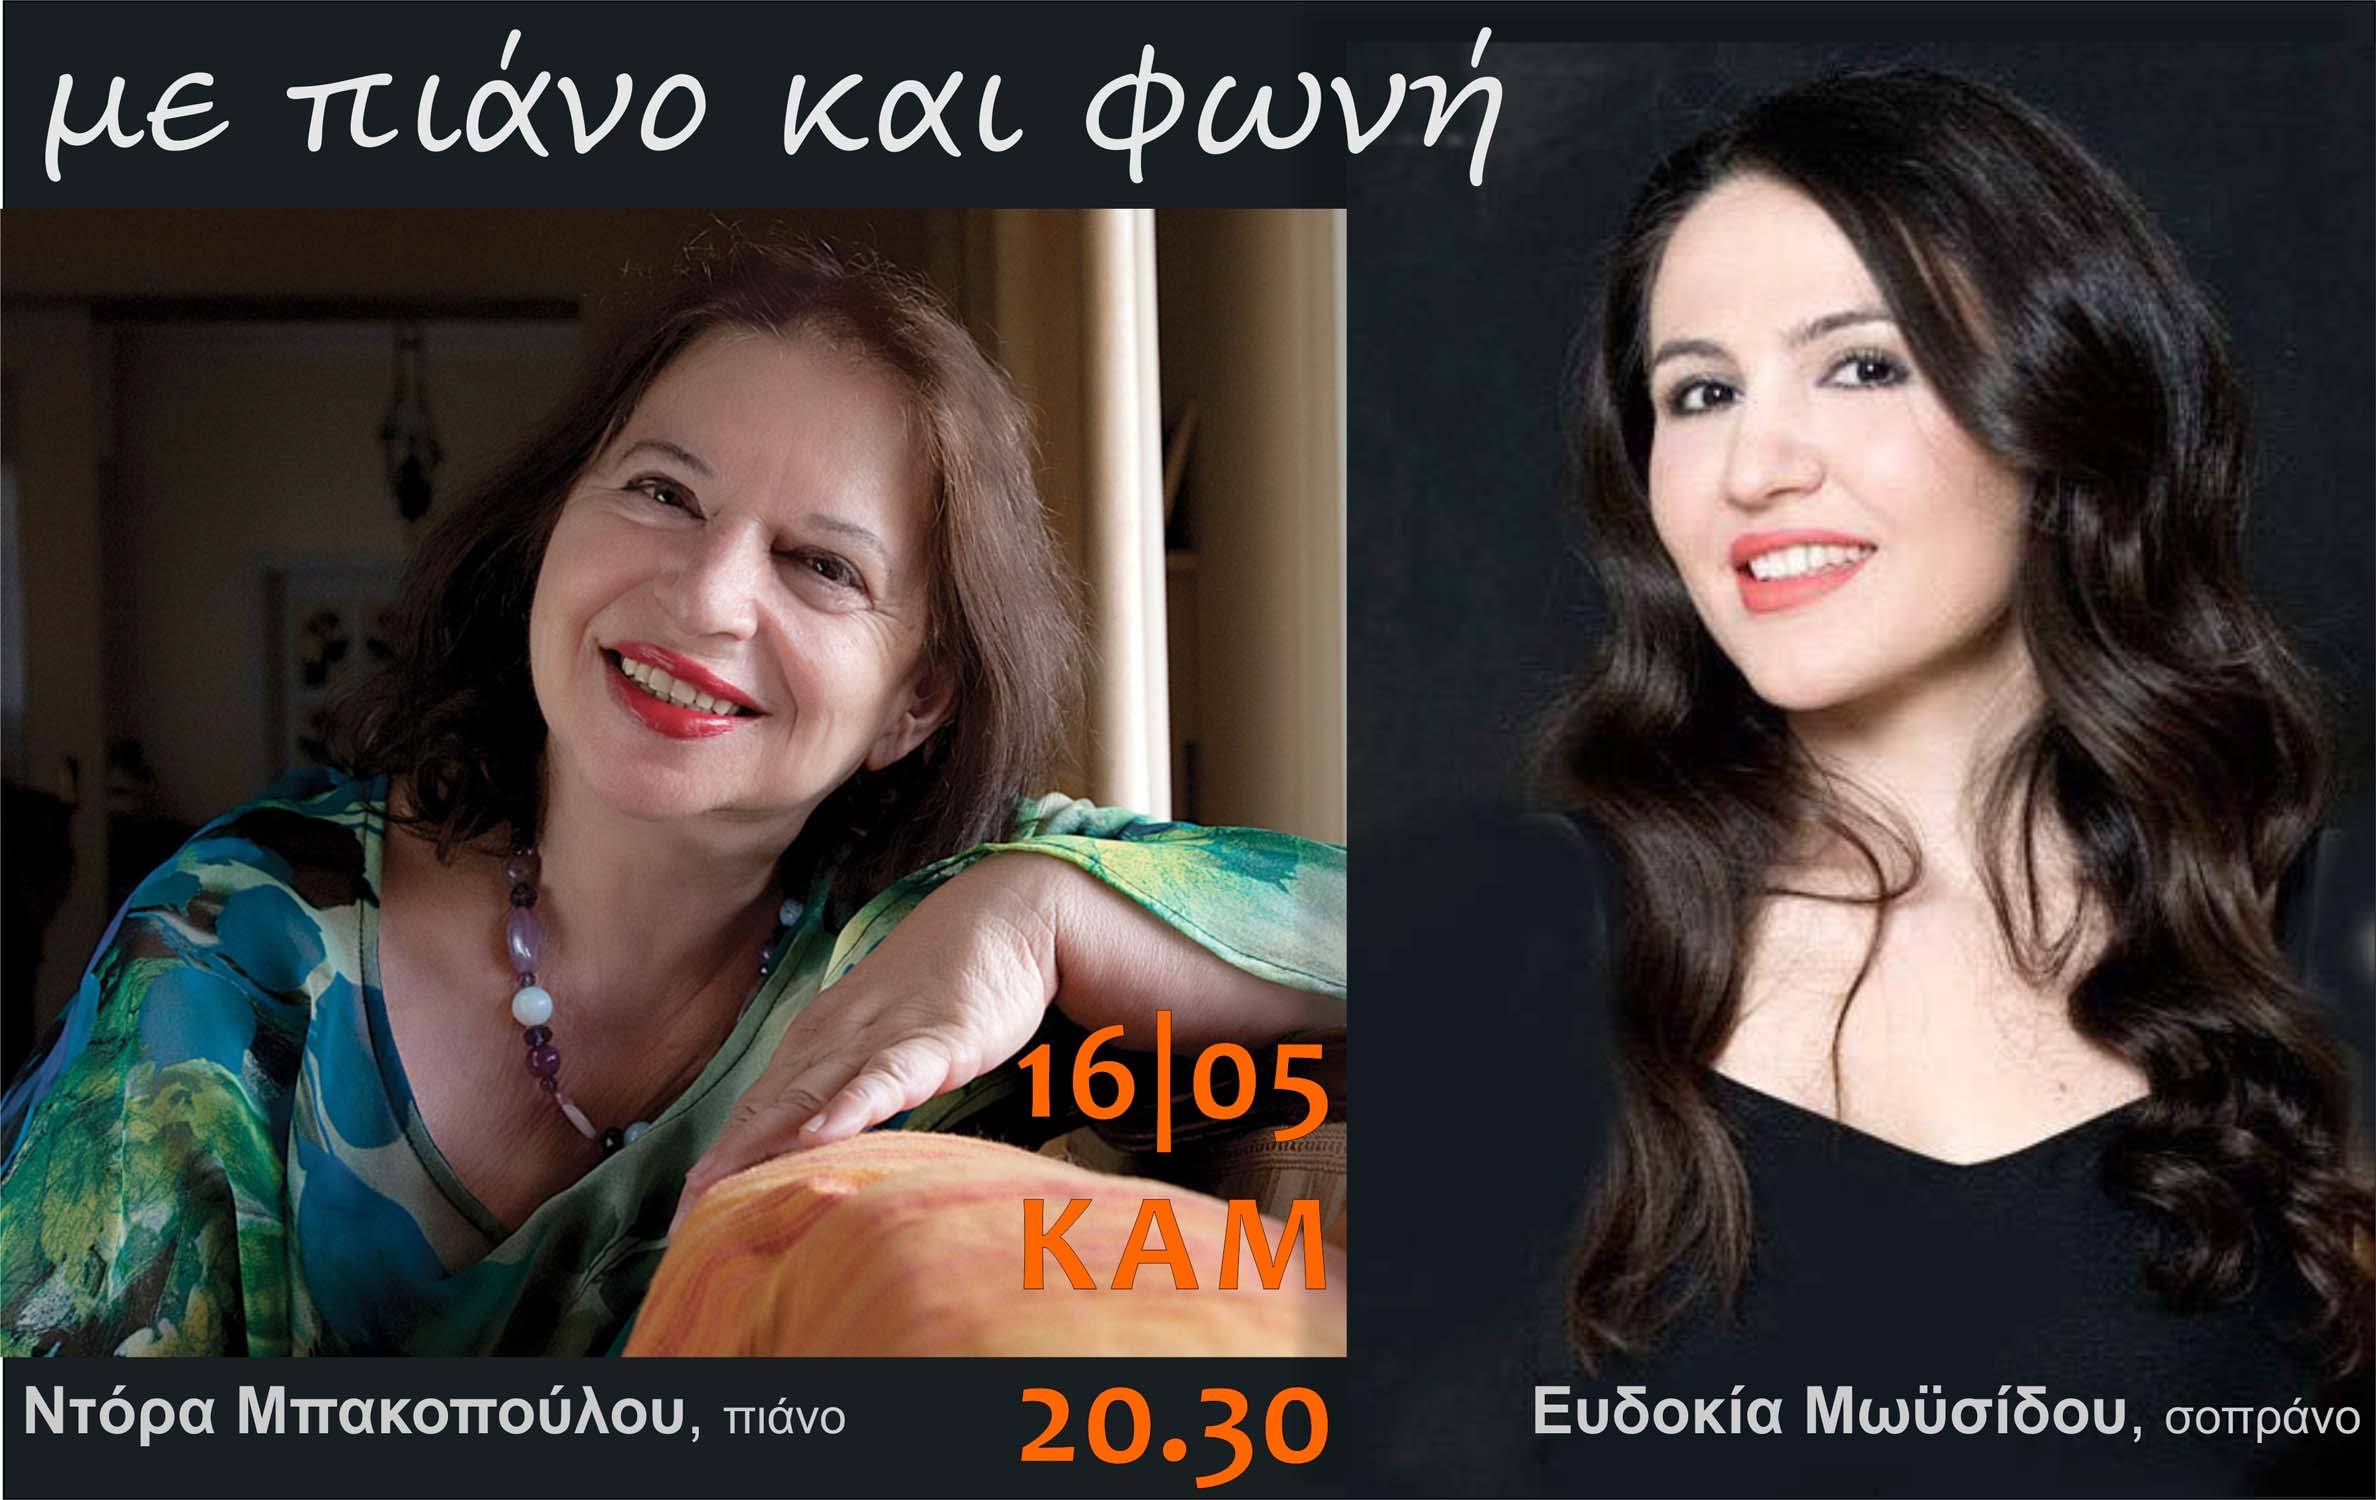 Συναυλία με τις Ντόρα Μπακοπούλου και Ευδοκία Μωυσίδου στα Χανιά